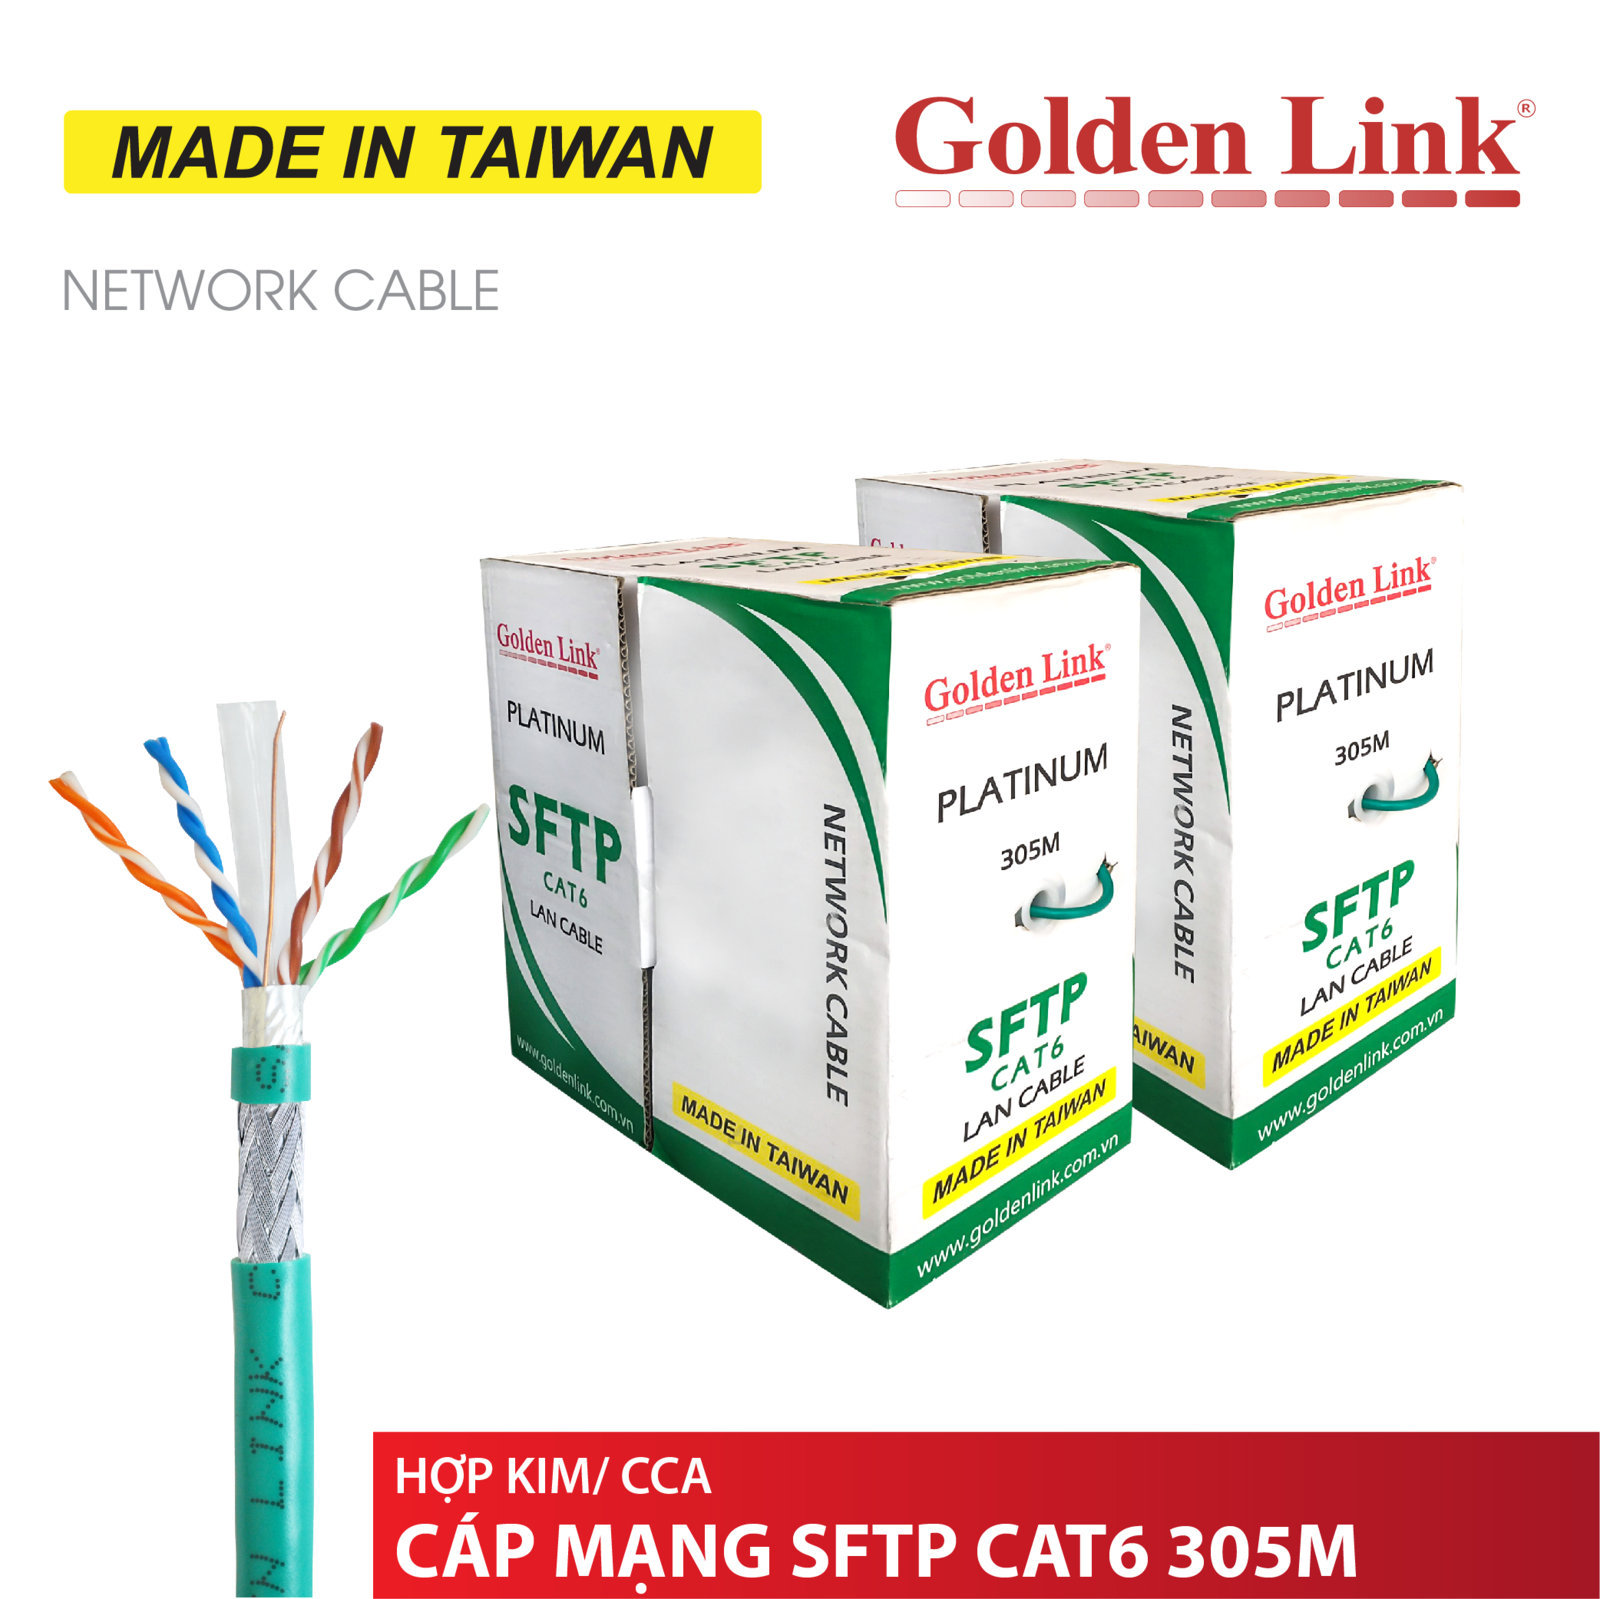 Cable LAN GOLDEN TAIWAN SFTP CAT6 305m Xanh lá (Chống nhiễu 2 lớp, Lõi chữ thập, Sợi cường lực đơn, Nhôm mạ đồng)